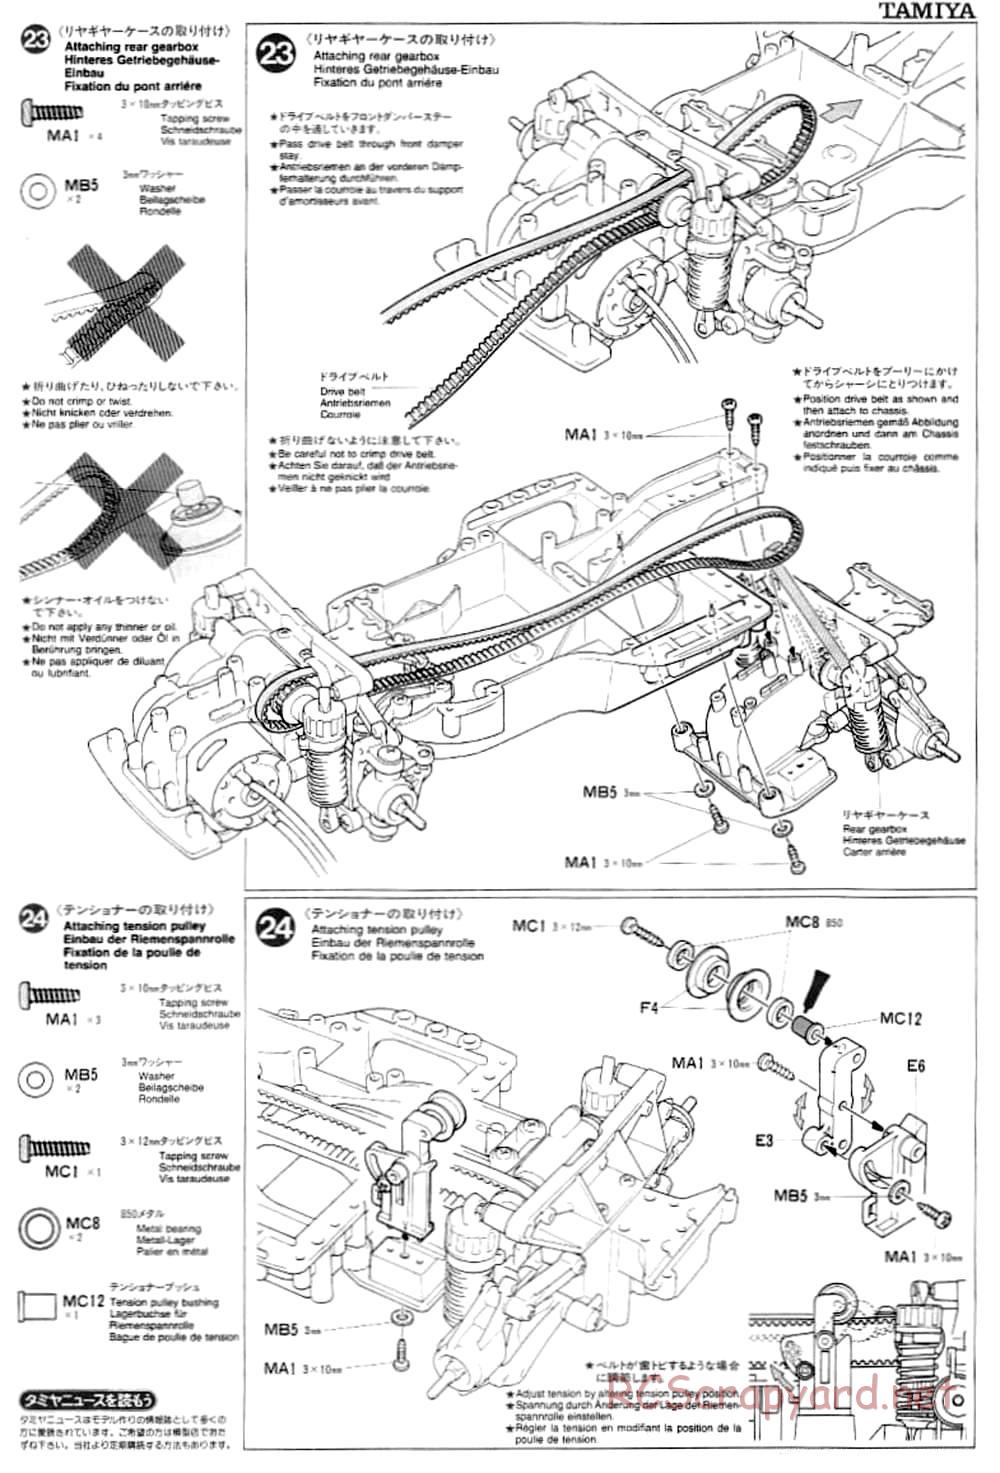 Tamiya - TA-03F Chassis - Manual - Page 13